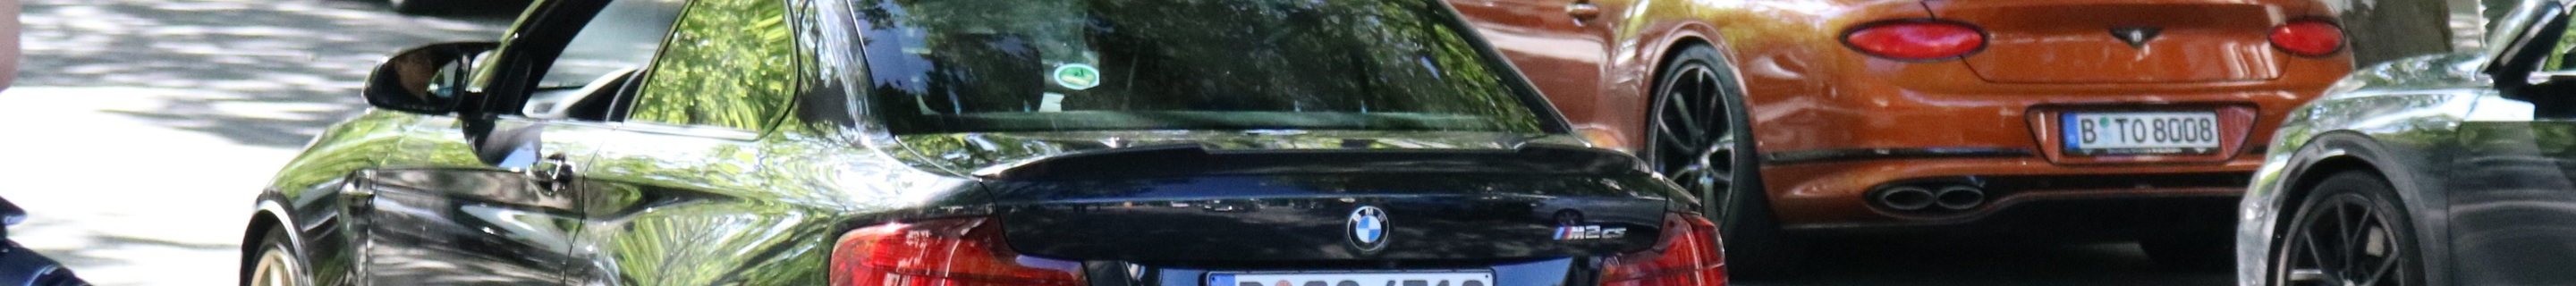 BMW M2 CS F87